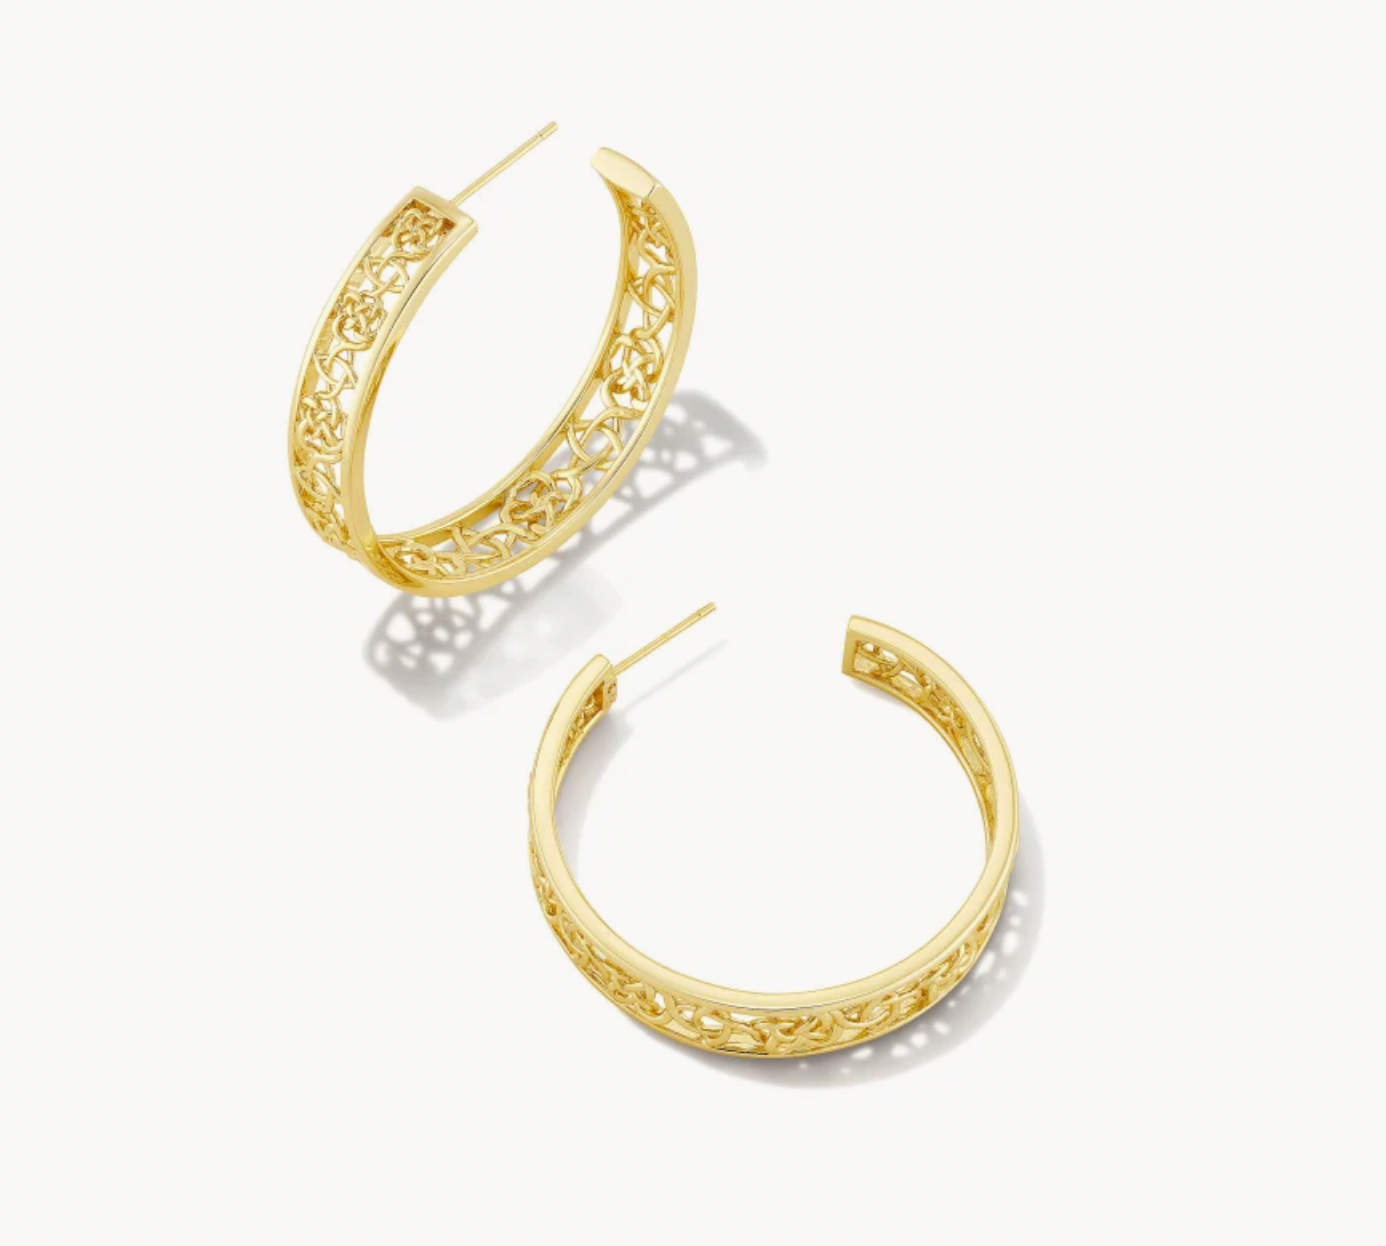 Kendra Scott Kelly Hoop Earrings in Gold